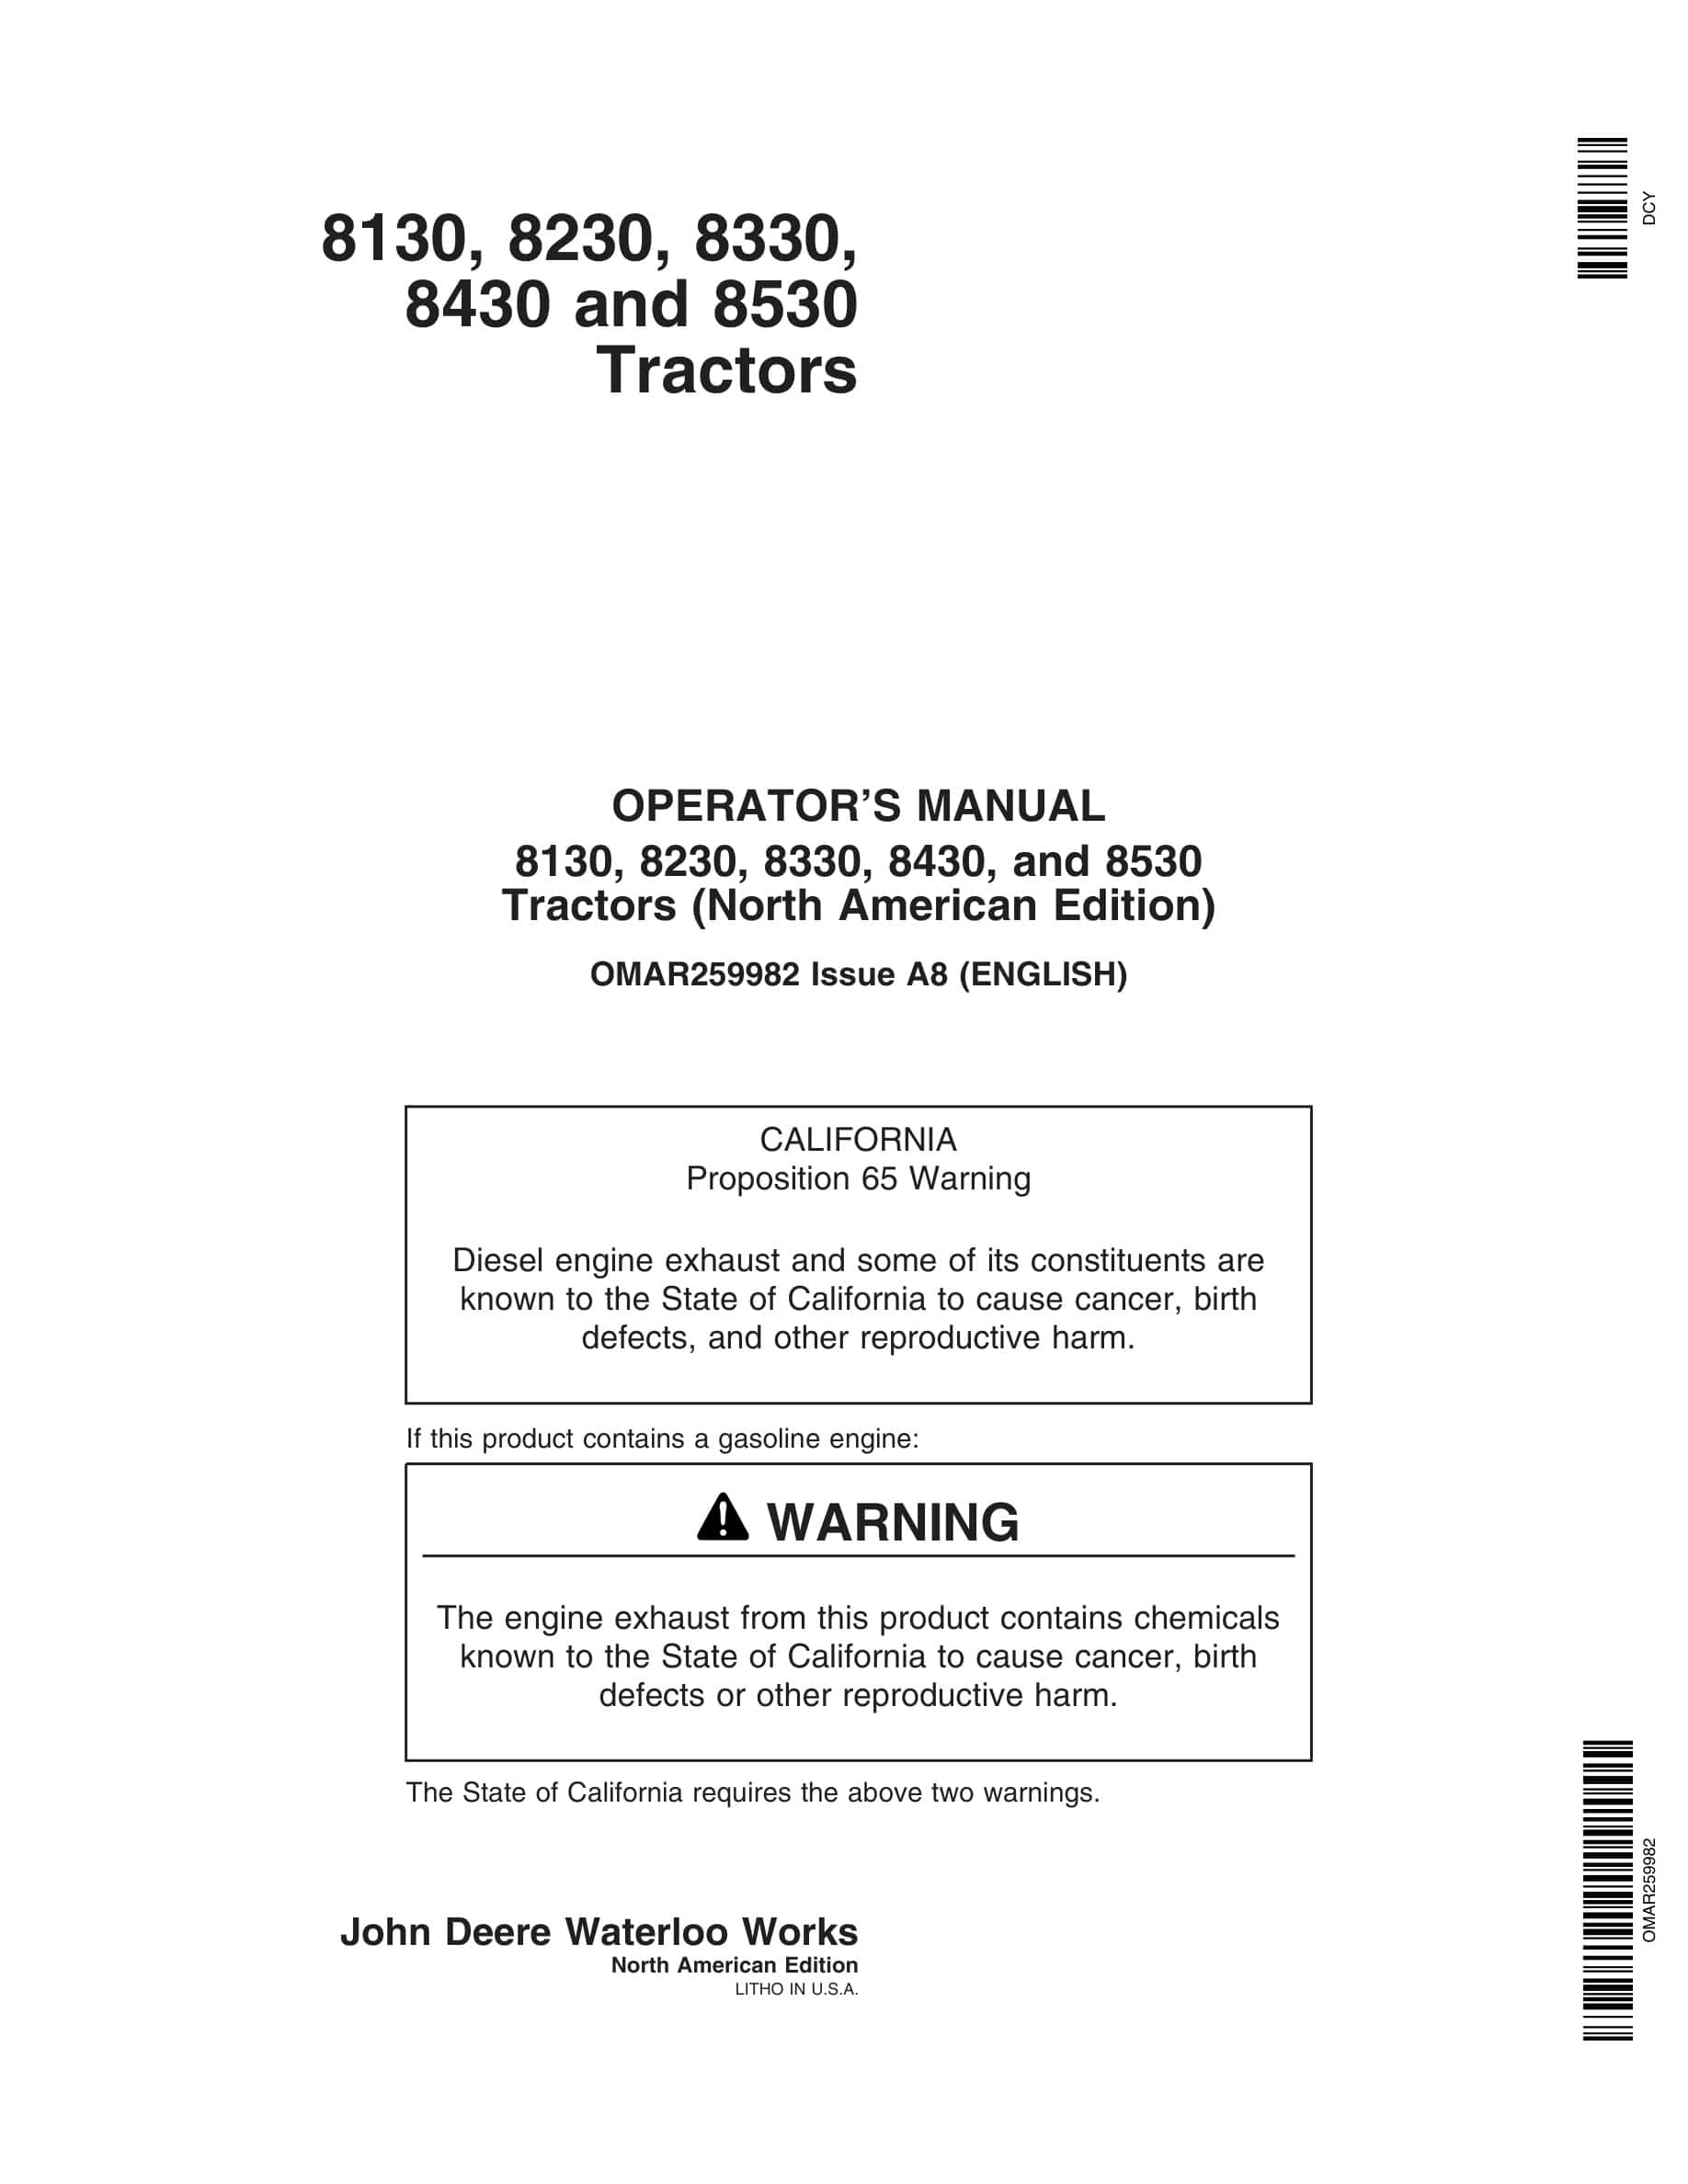 John Deere 8130, 8230, 8330, 8430, and 8530 Tractor Operator Manual OMAR259982-1